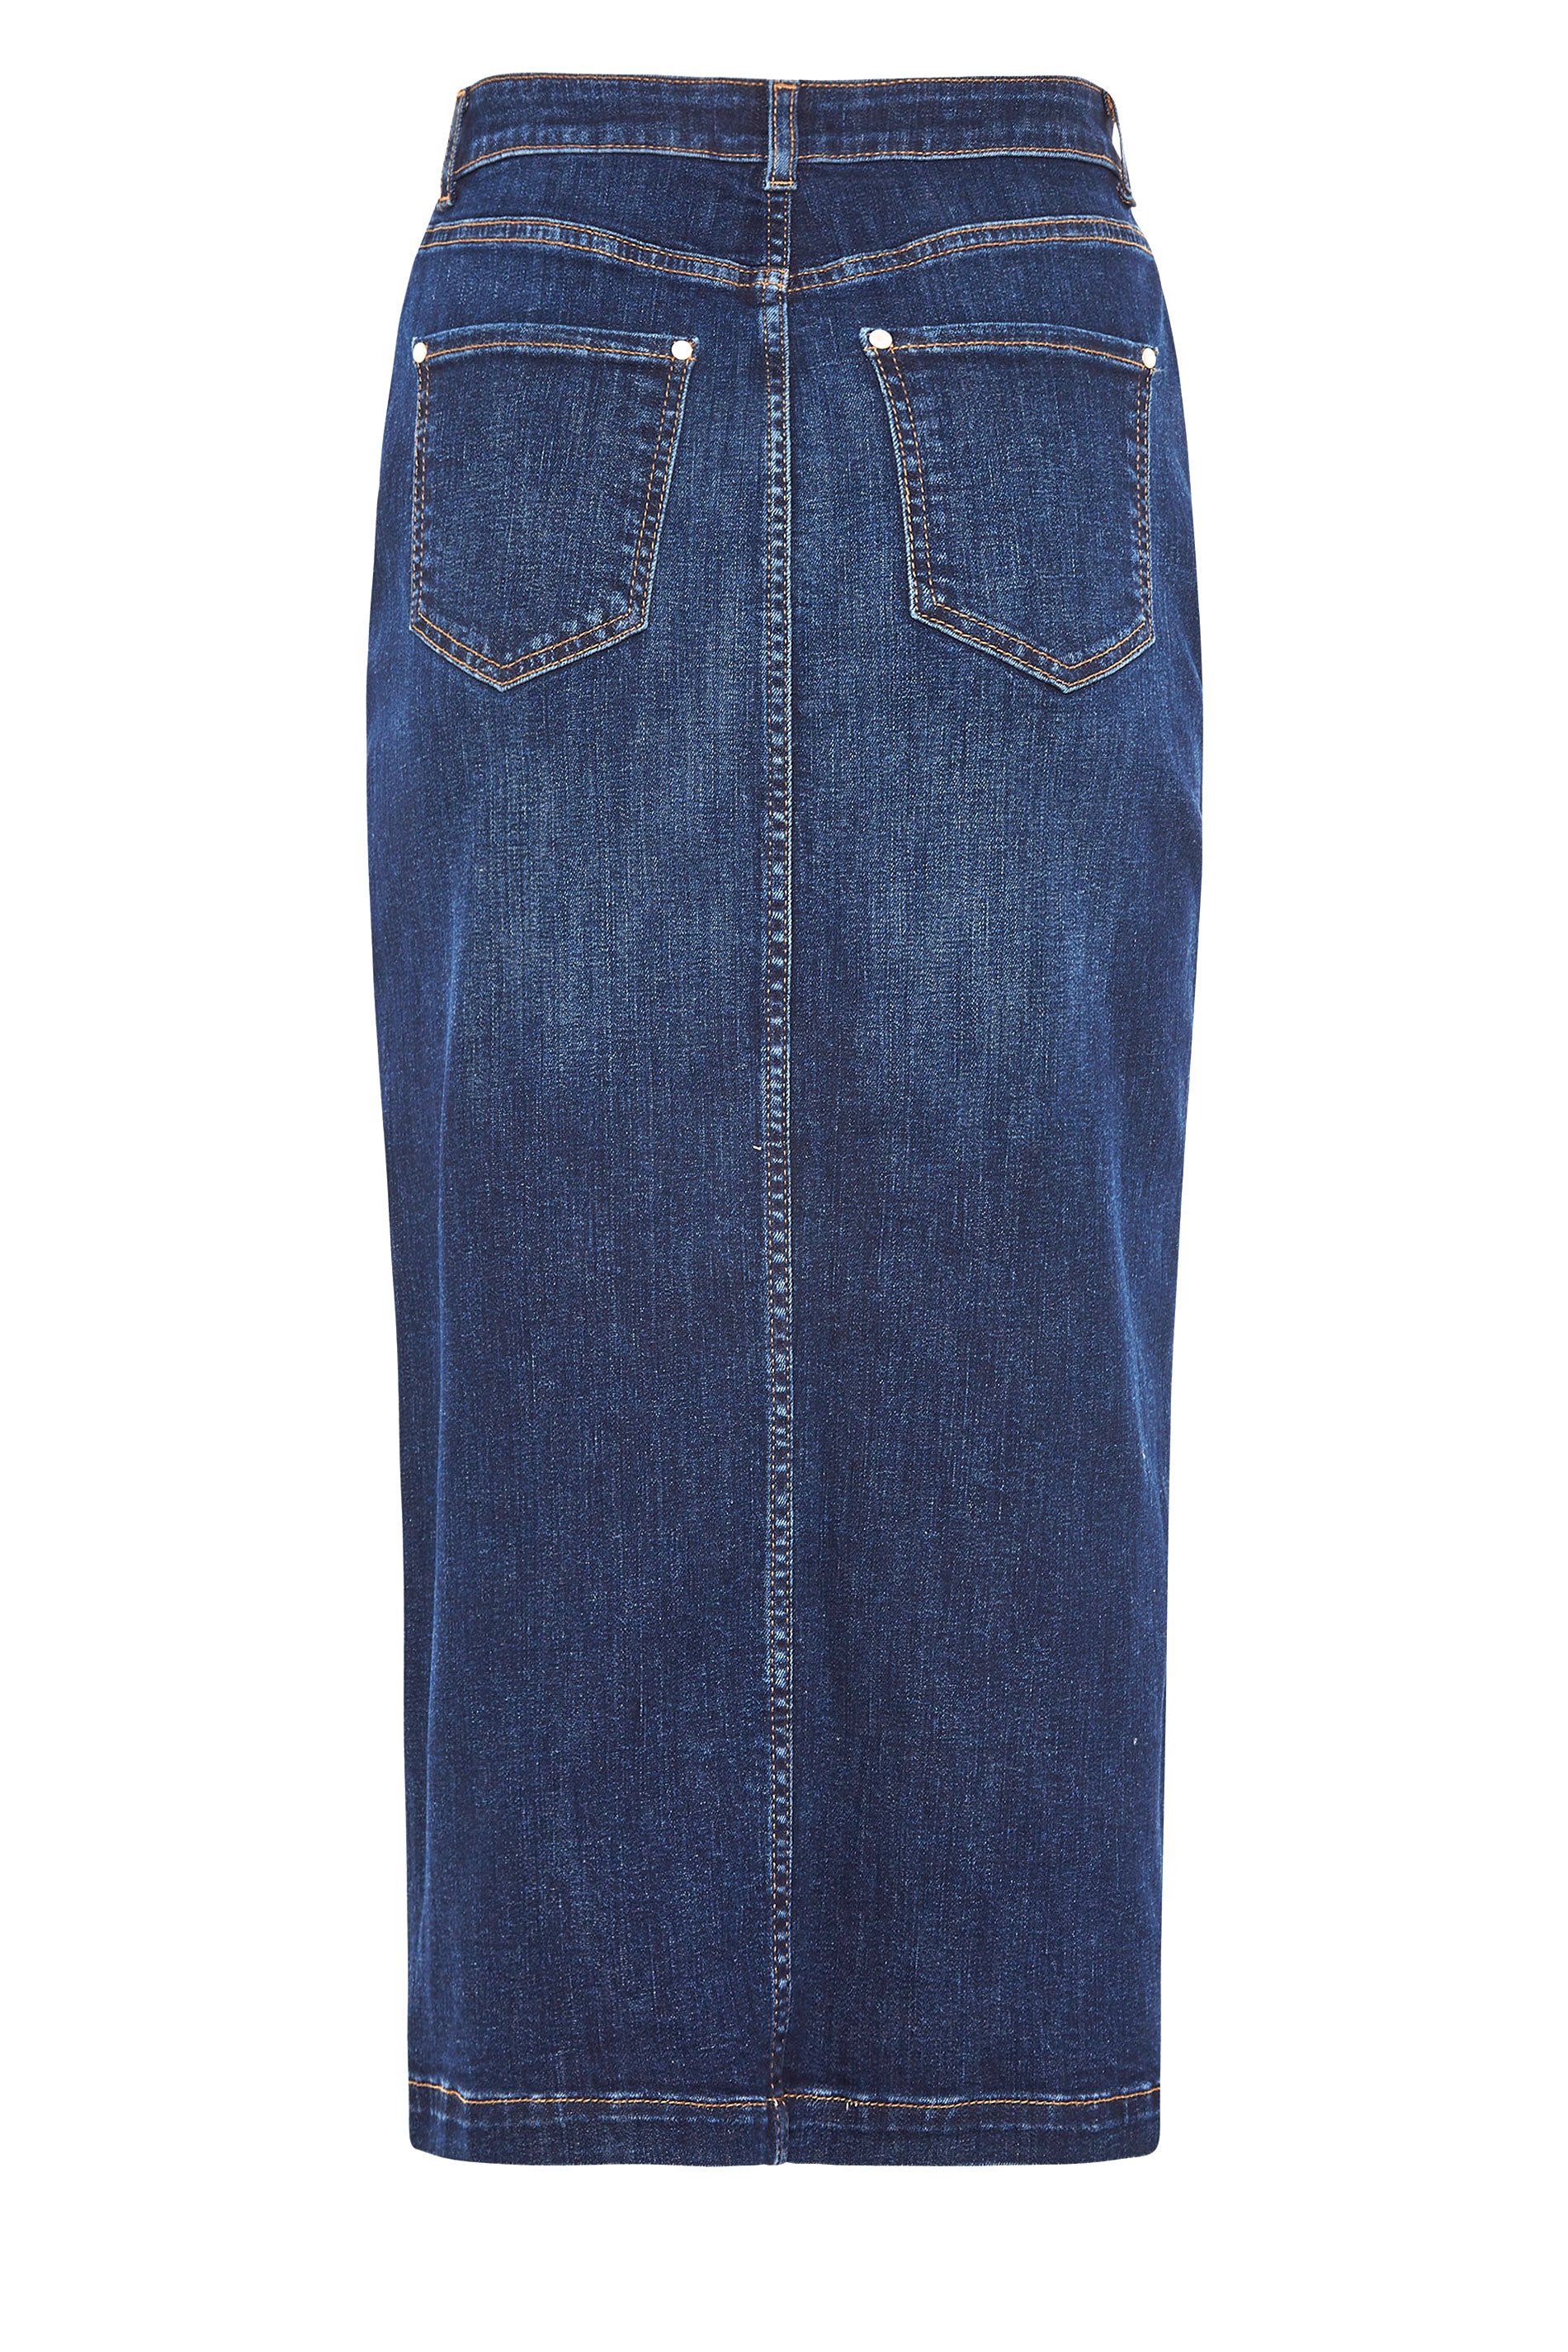 LTS Blue Denim Pencil Skirt | Long Tall Sally